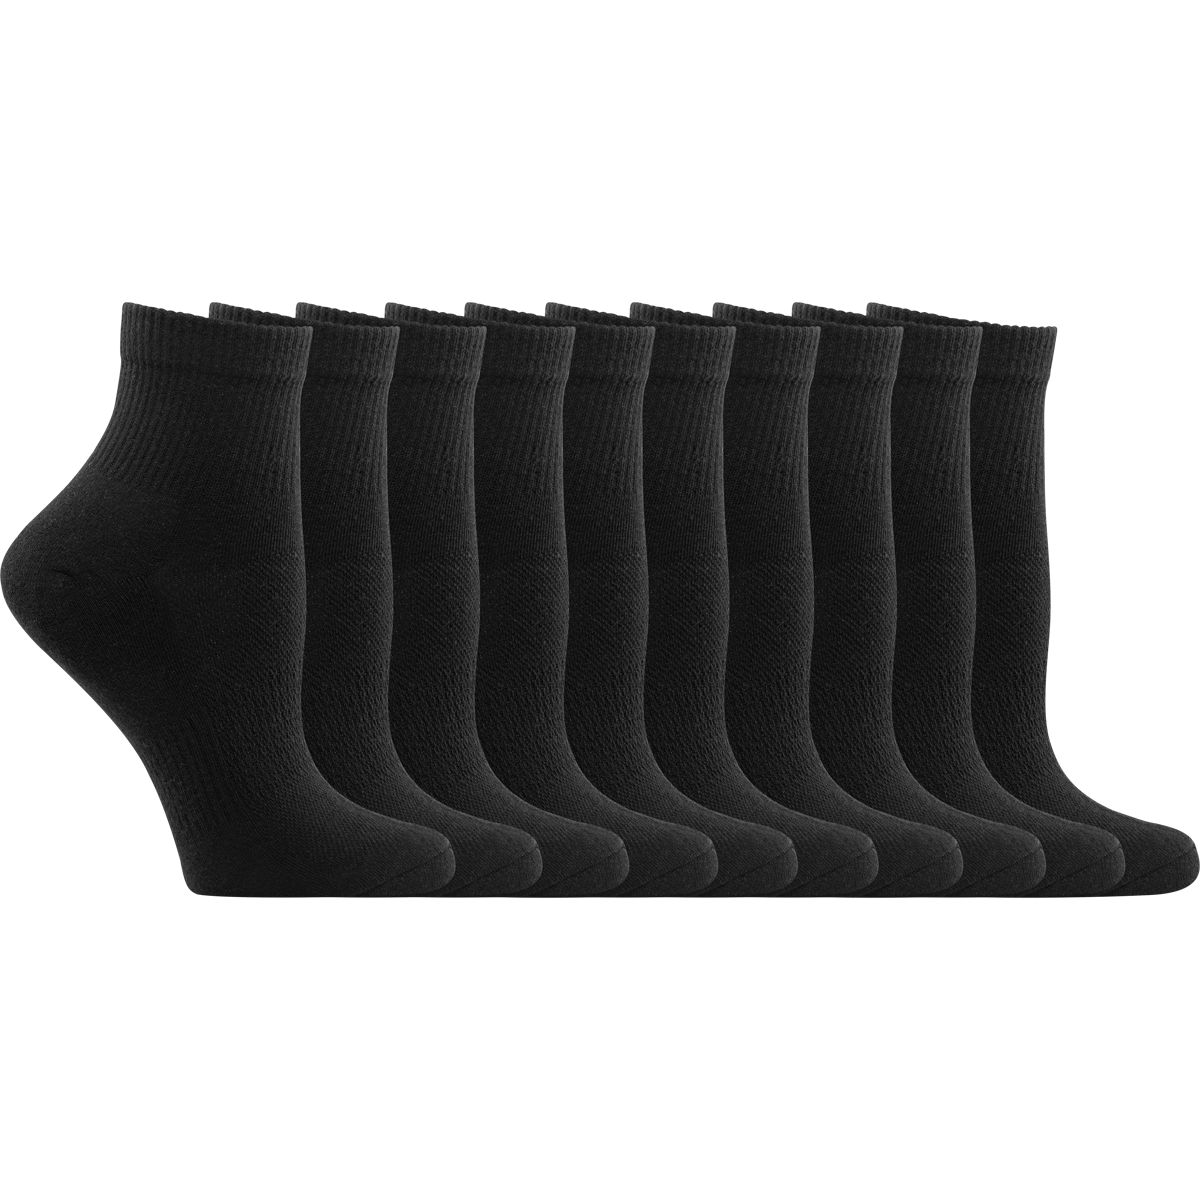 10-pack Socks - Black - Ladies